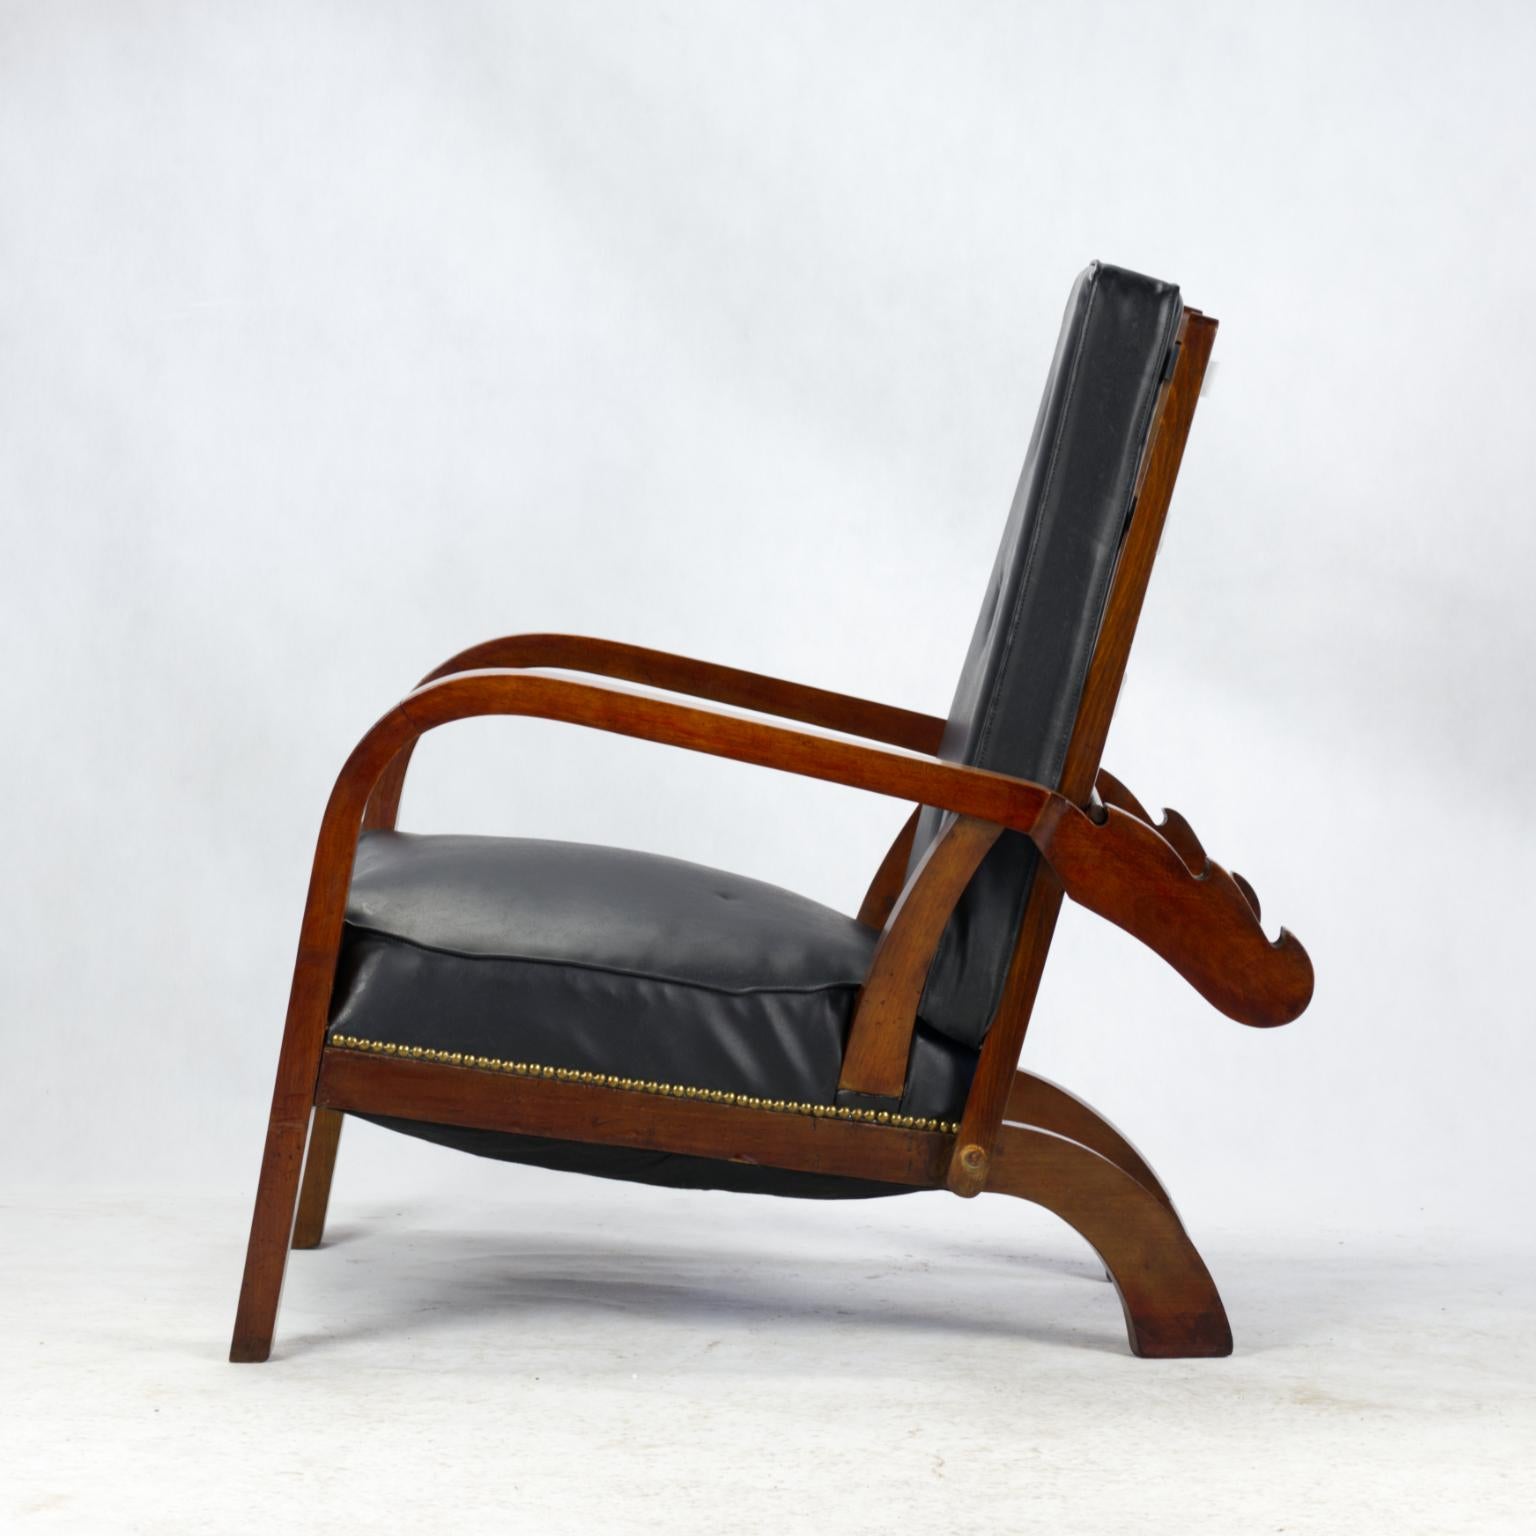 Grande chaise longue inclinable Art Déco, Tchécoslovaquie, années 1930. Le dossier et l'assise peuvent être mis dans trois positions différentes.La sellerie n'est pas d'origine, elle a été refaite en similicuir dans le passé.